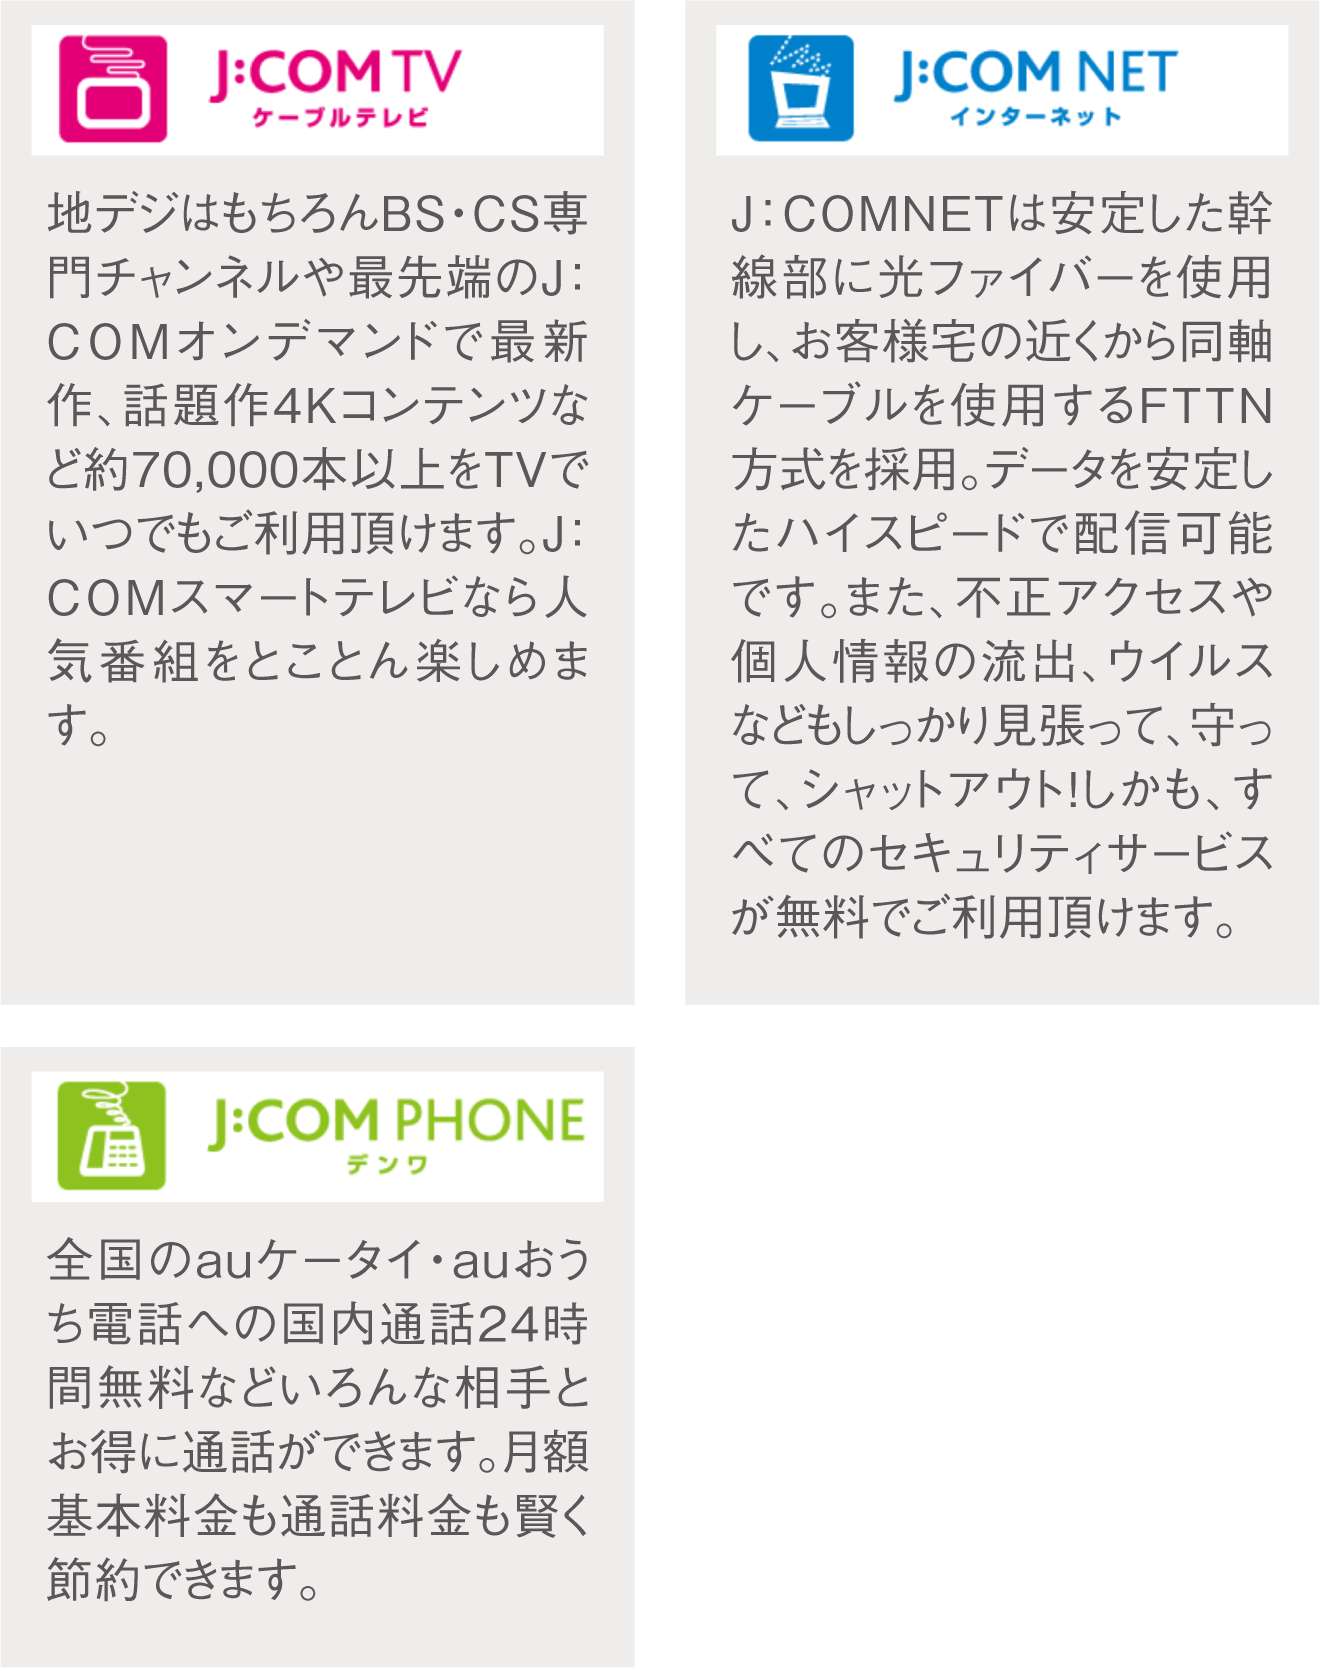 JCOMTV NET PHONE